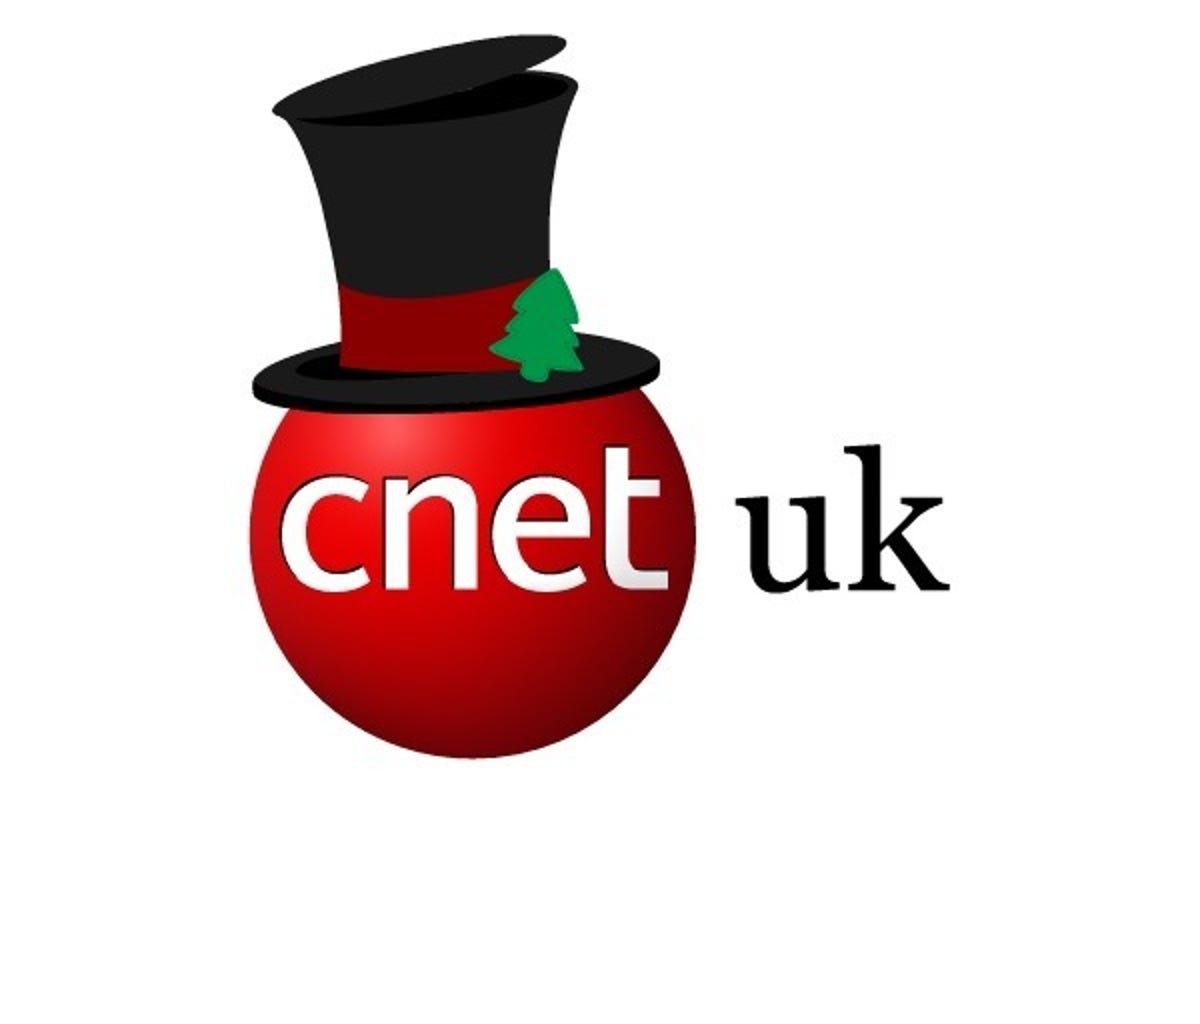 cnetuk-logo-hat5.jpg